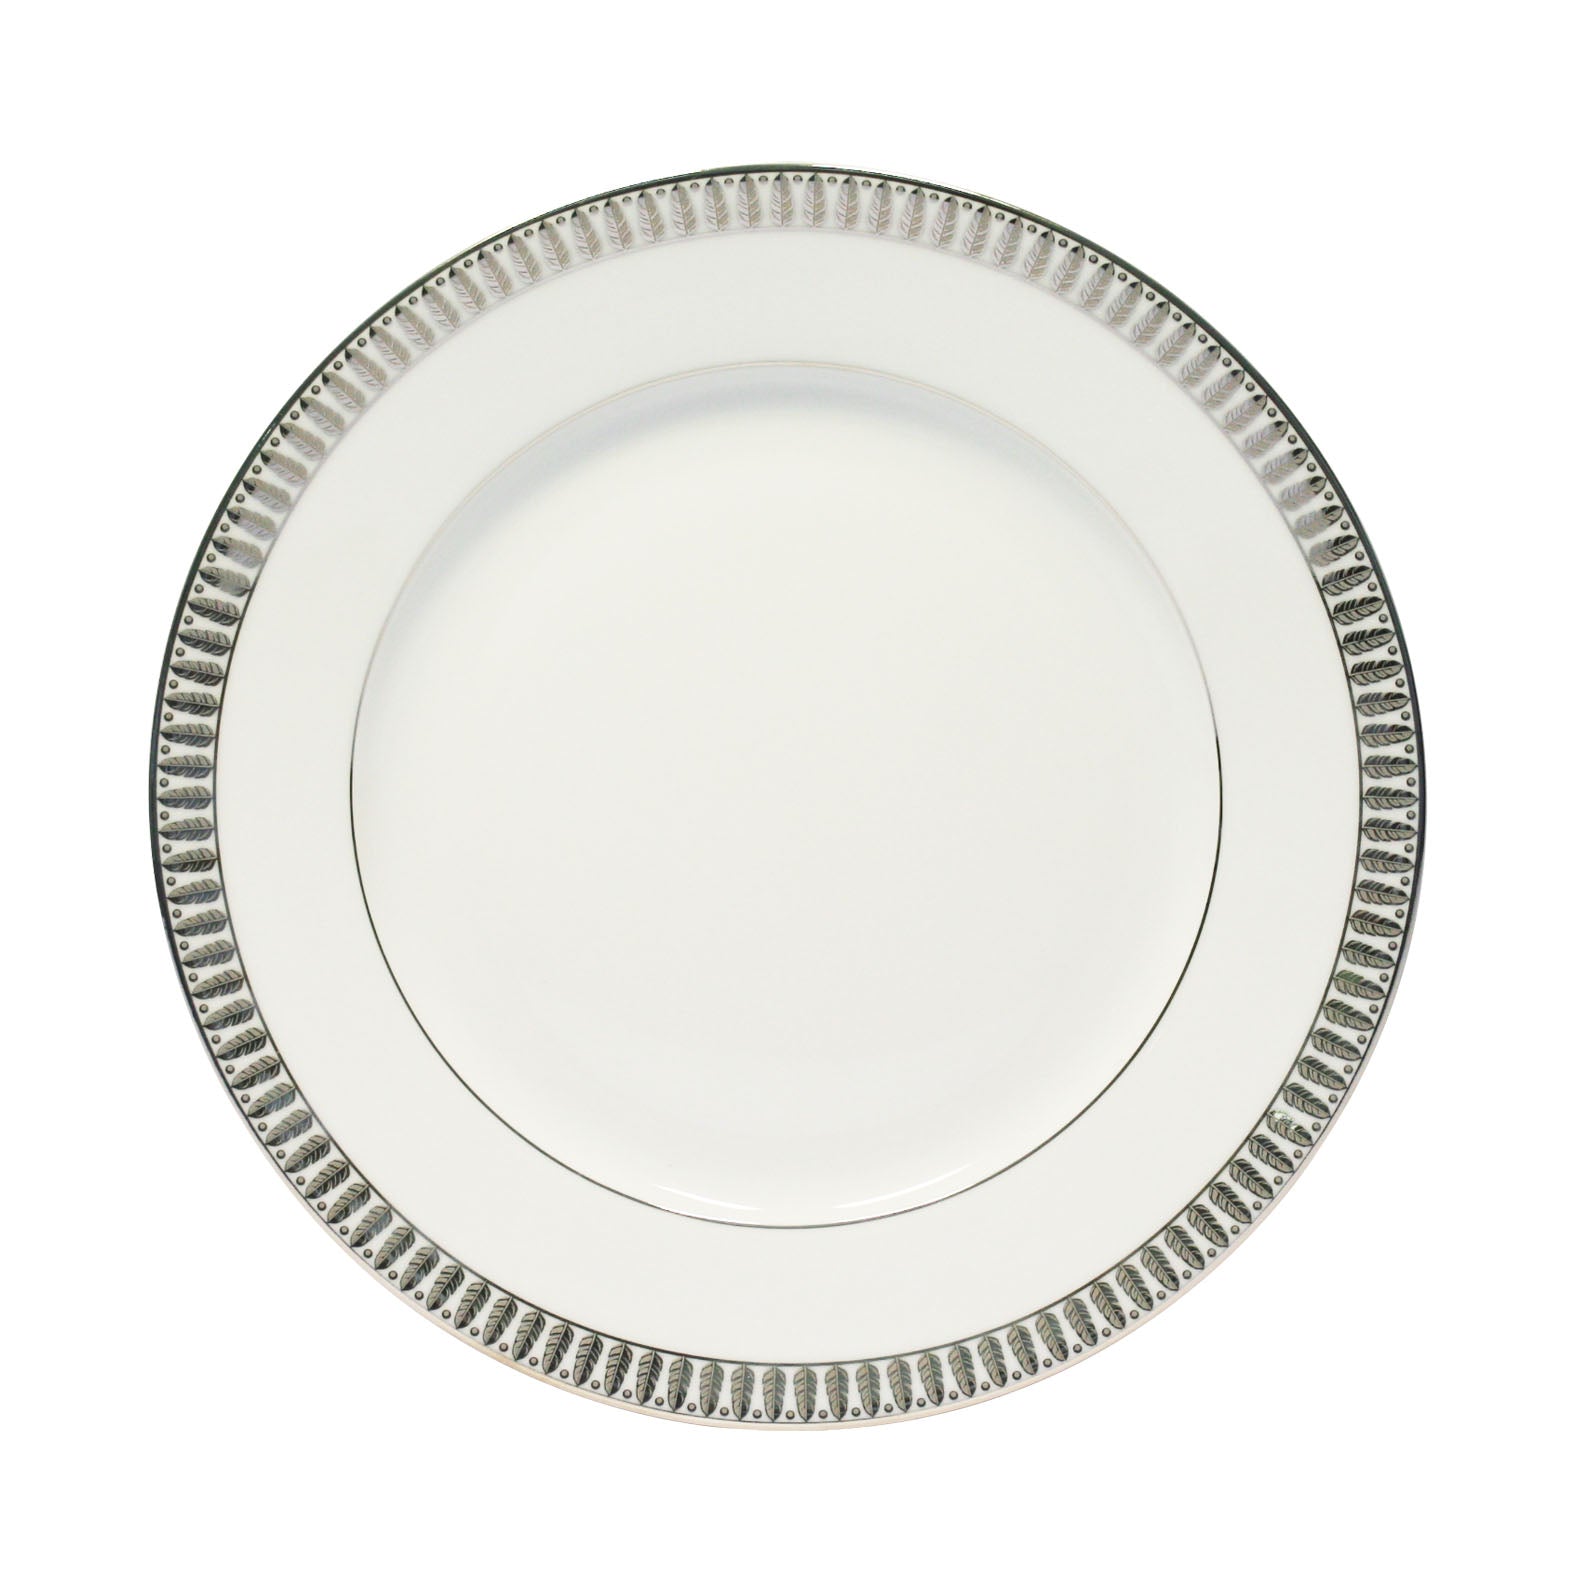 Plumes Dessert Plate in Platinum